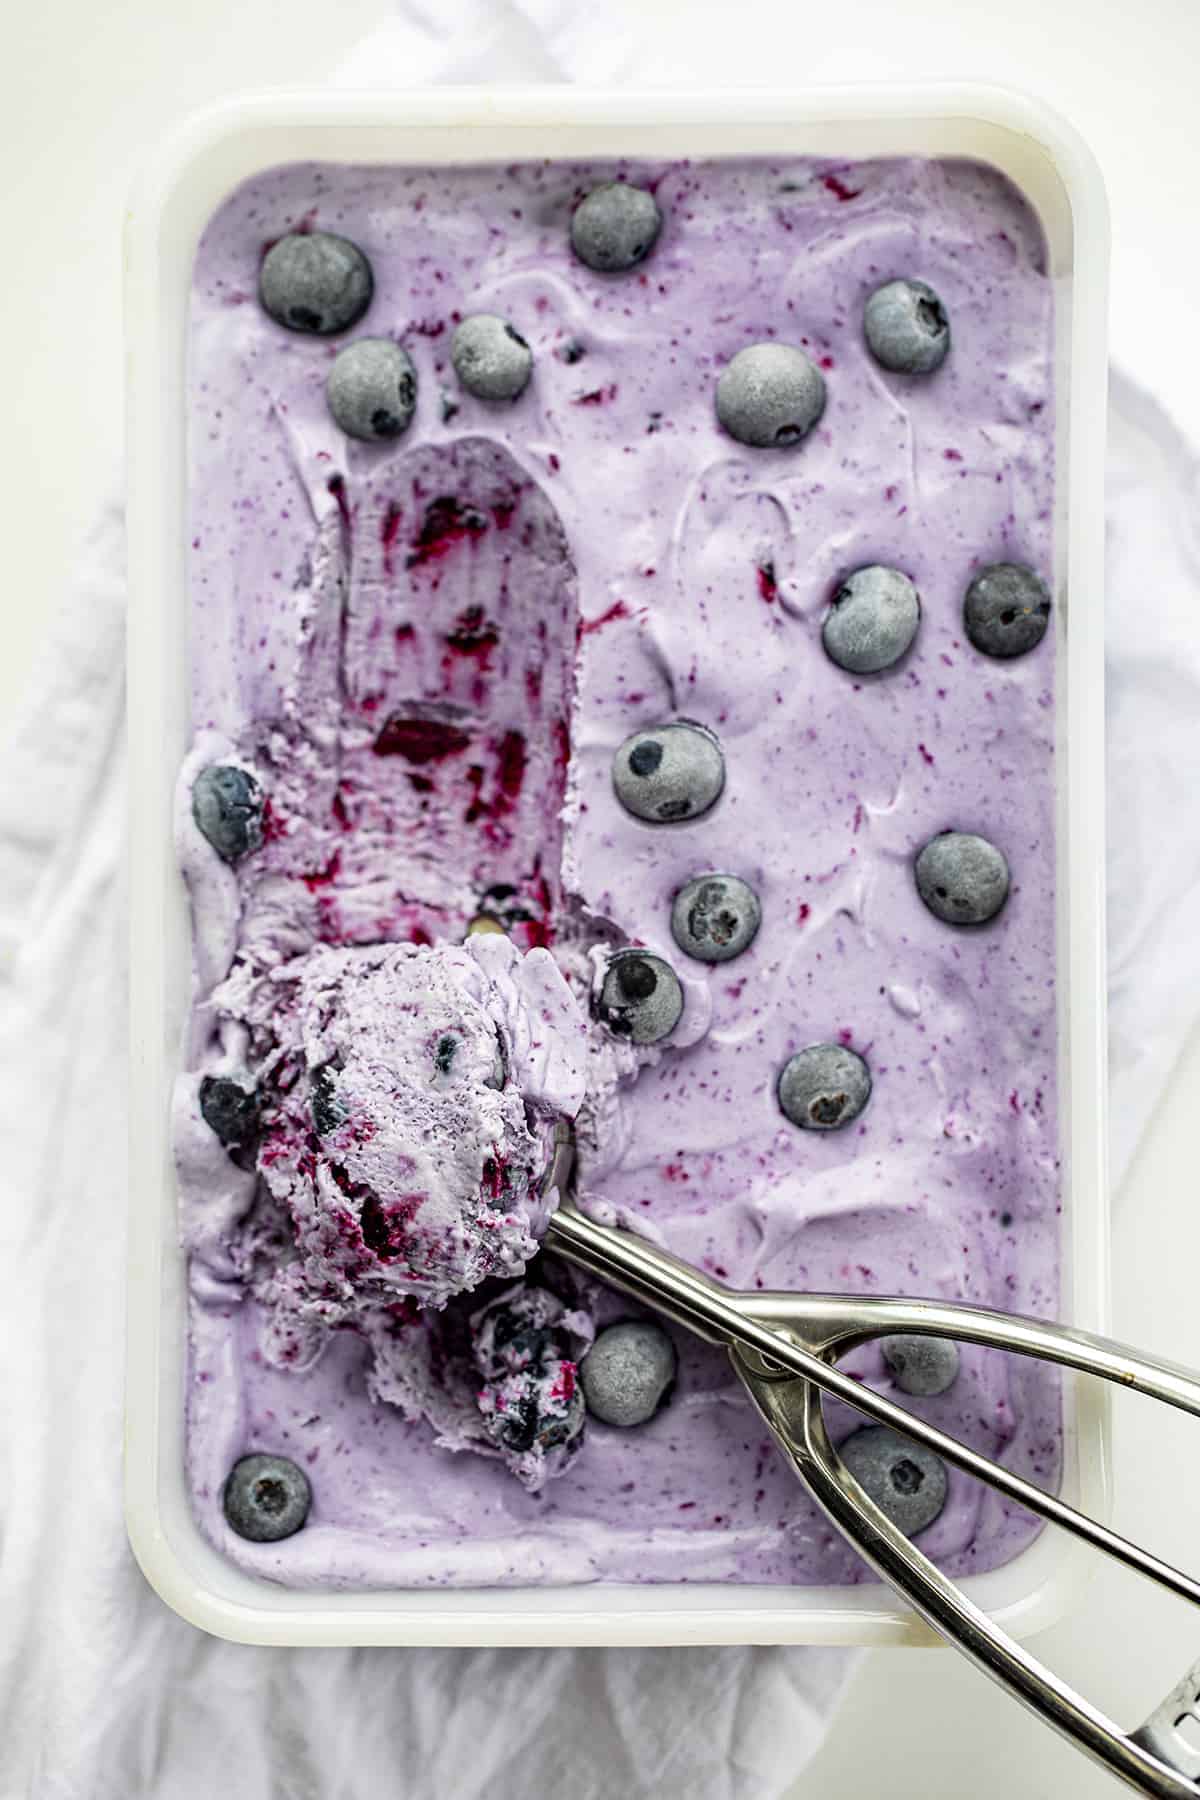 与蓝莓No-Churn冰淇淋勺放在冰淇淋从开销。